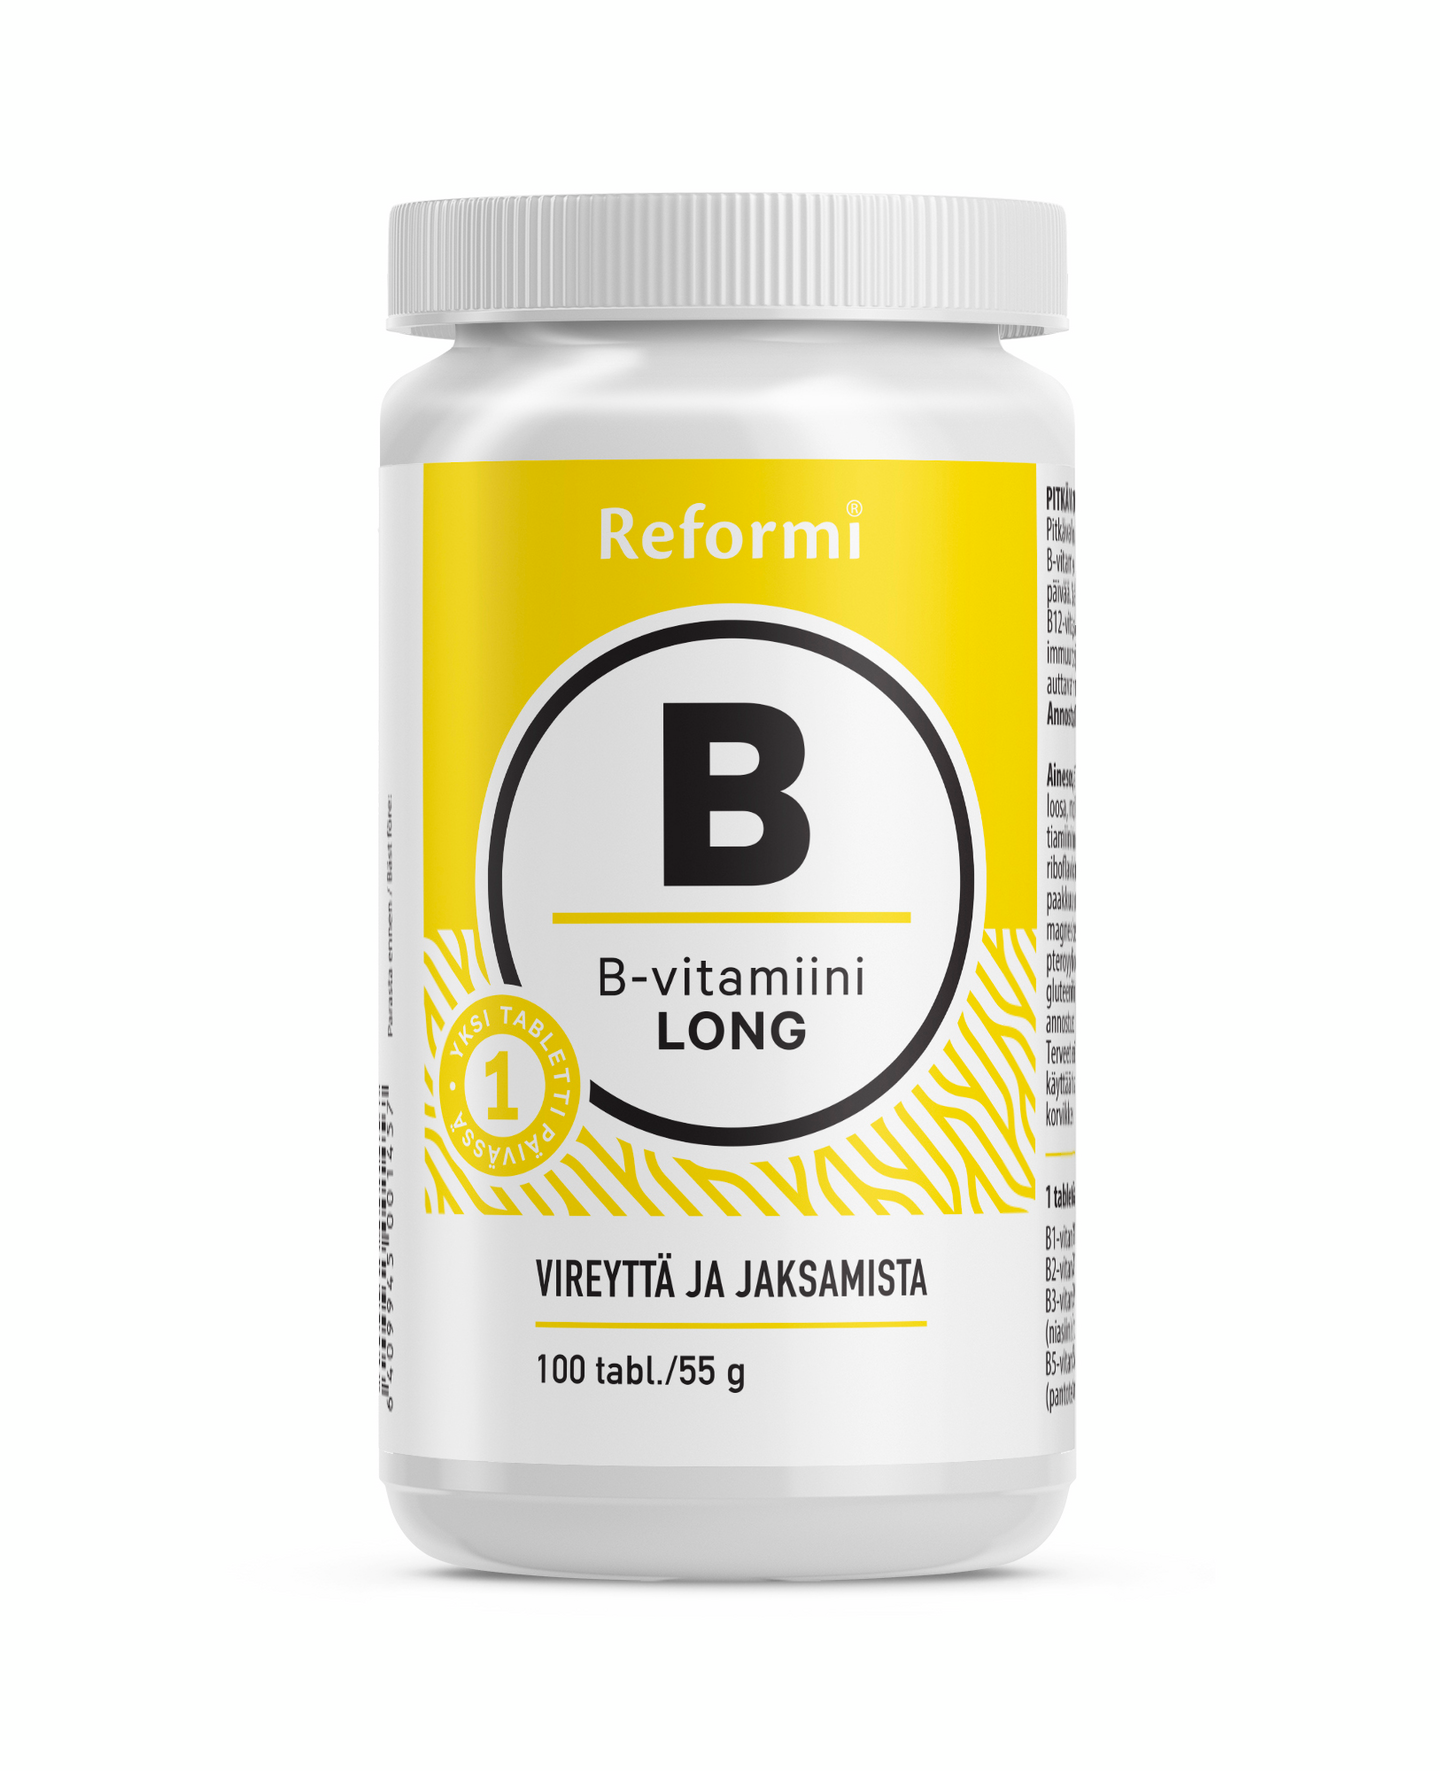 Reformi B-vitamin pitkävaikutteinen 100tabl/ 55g  ravintolisä